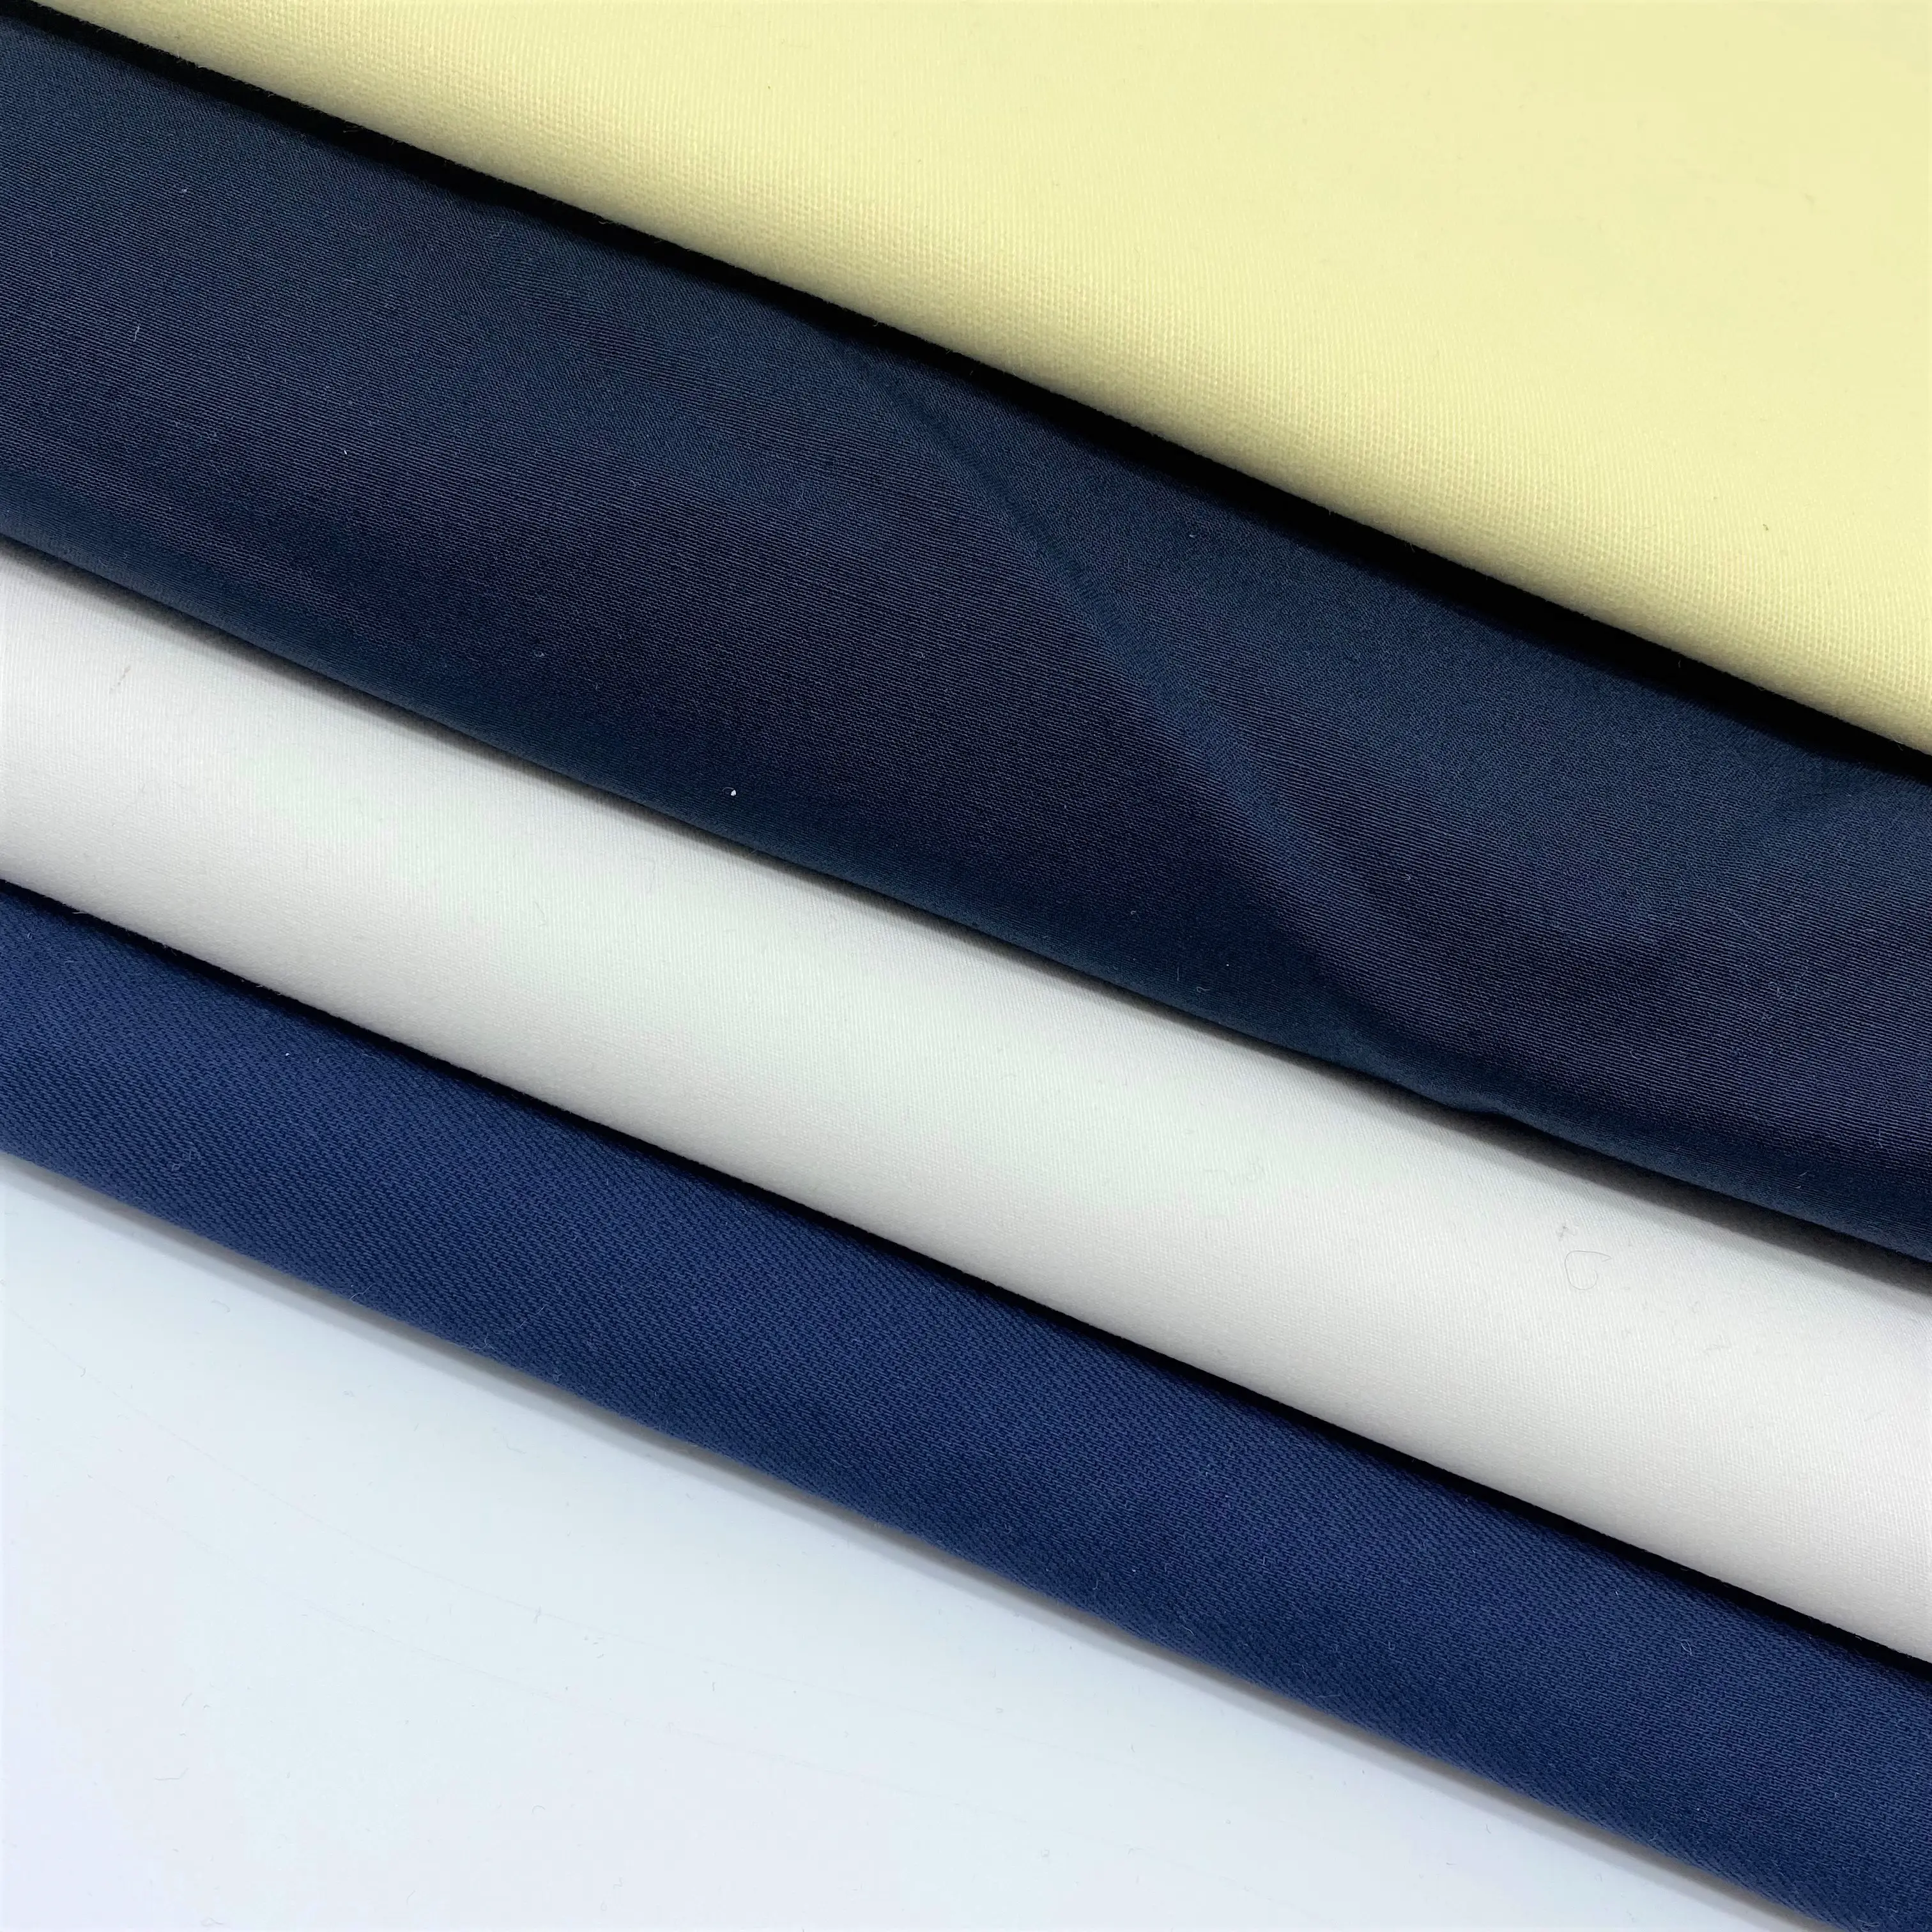 Материал текстиля, чесаный 94% хлопок, 6% спандекс, компактная трикотажная ткань Siro, хлопок, спандекс, холодное ощущение для футболки